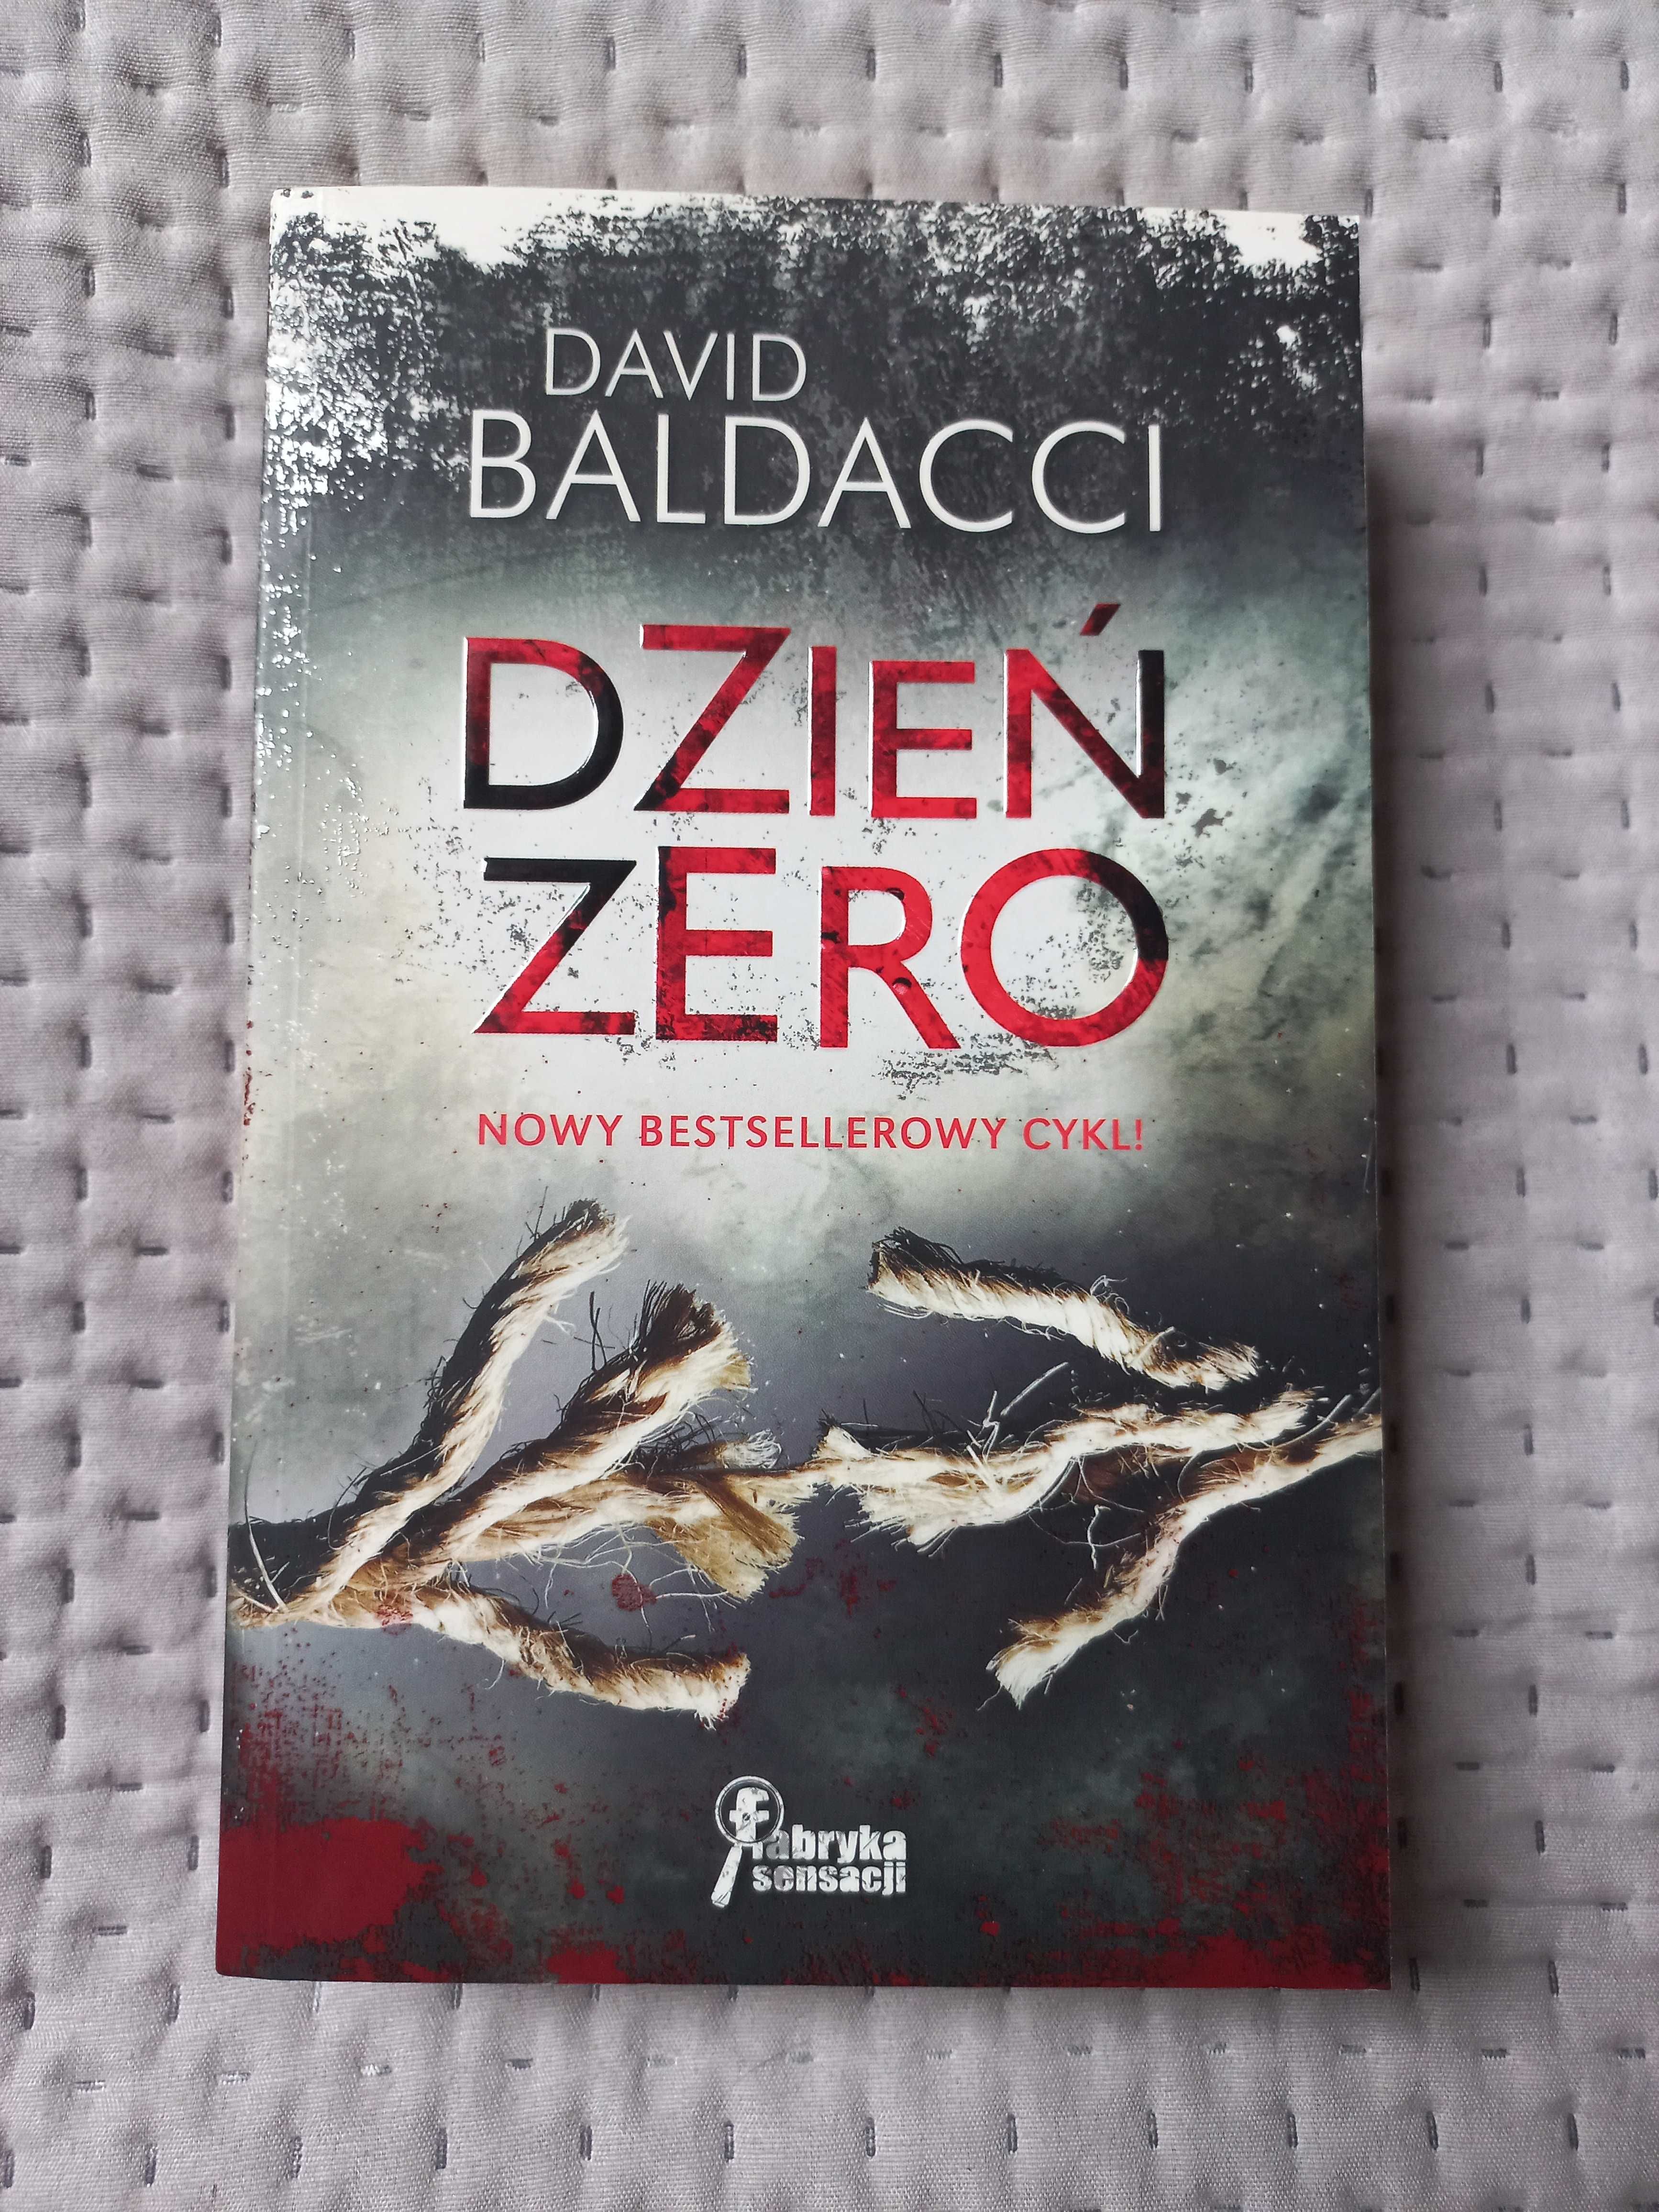 Książka "Dzień zero" David Baldacci